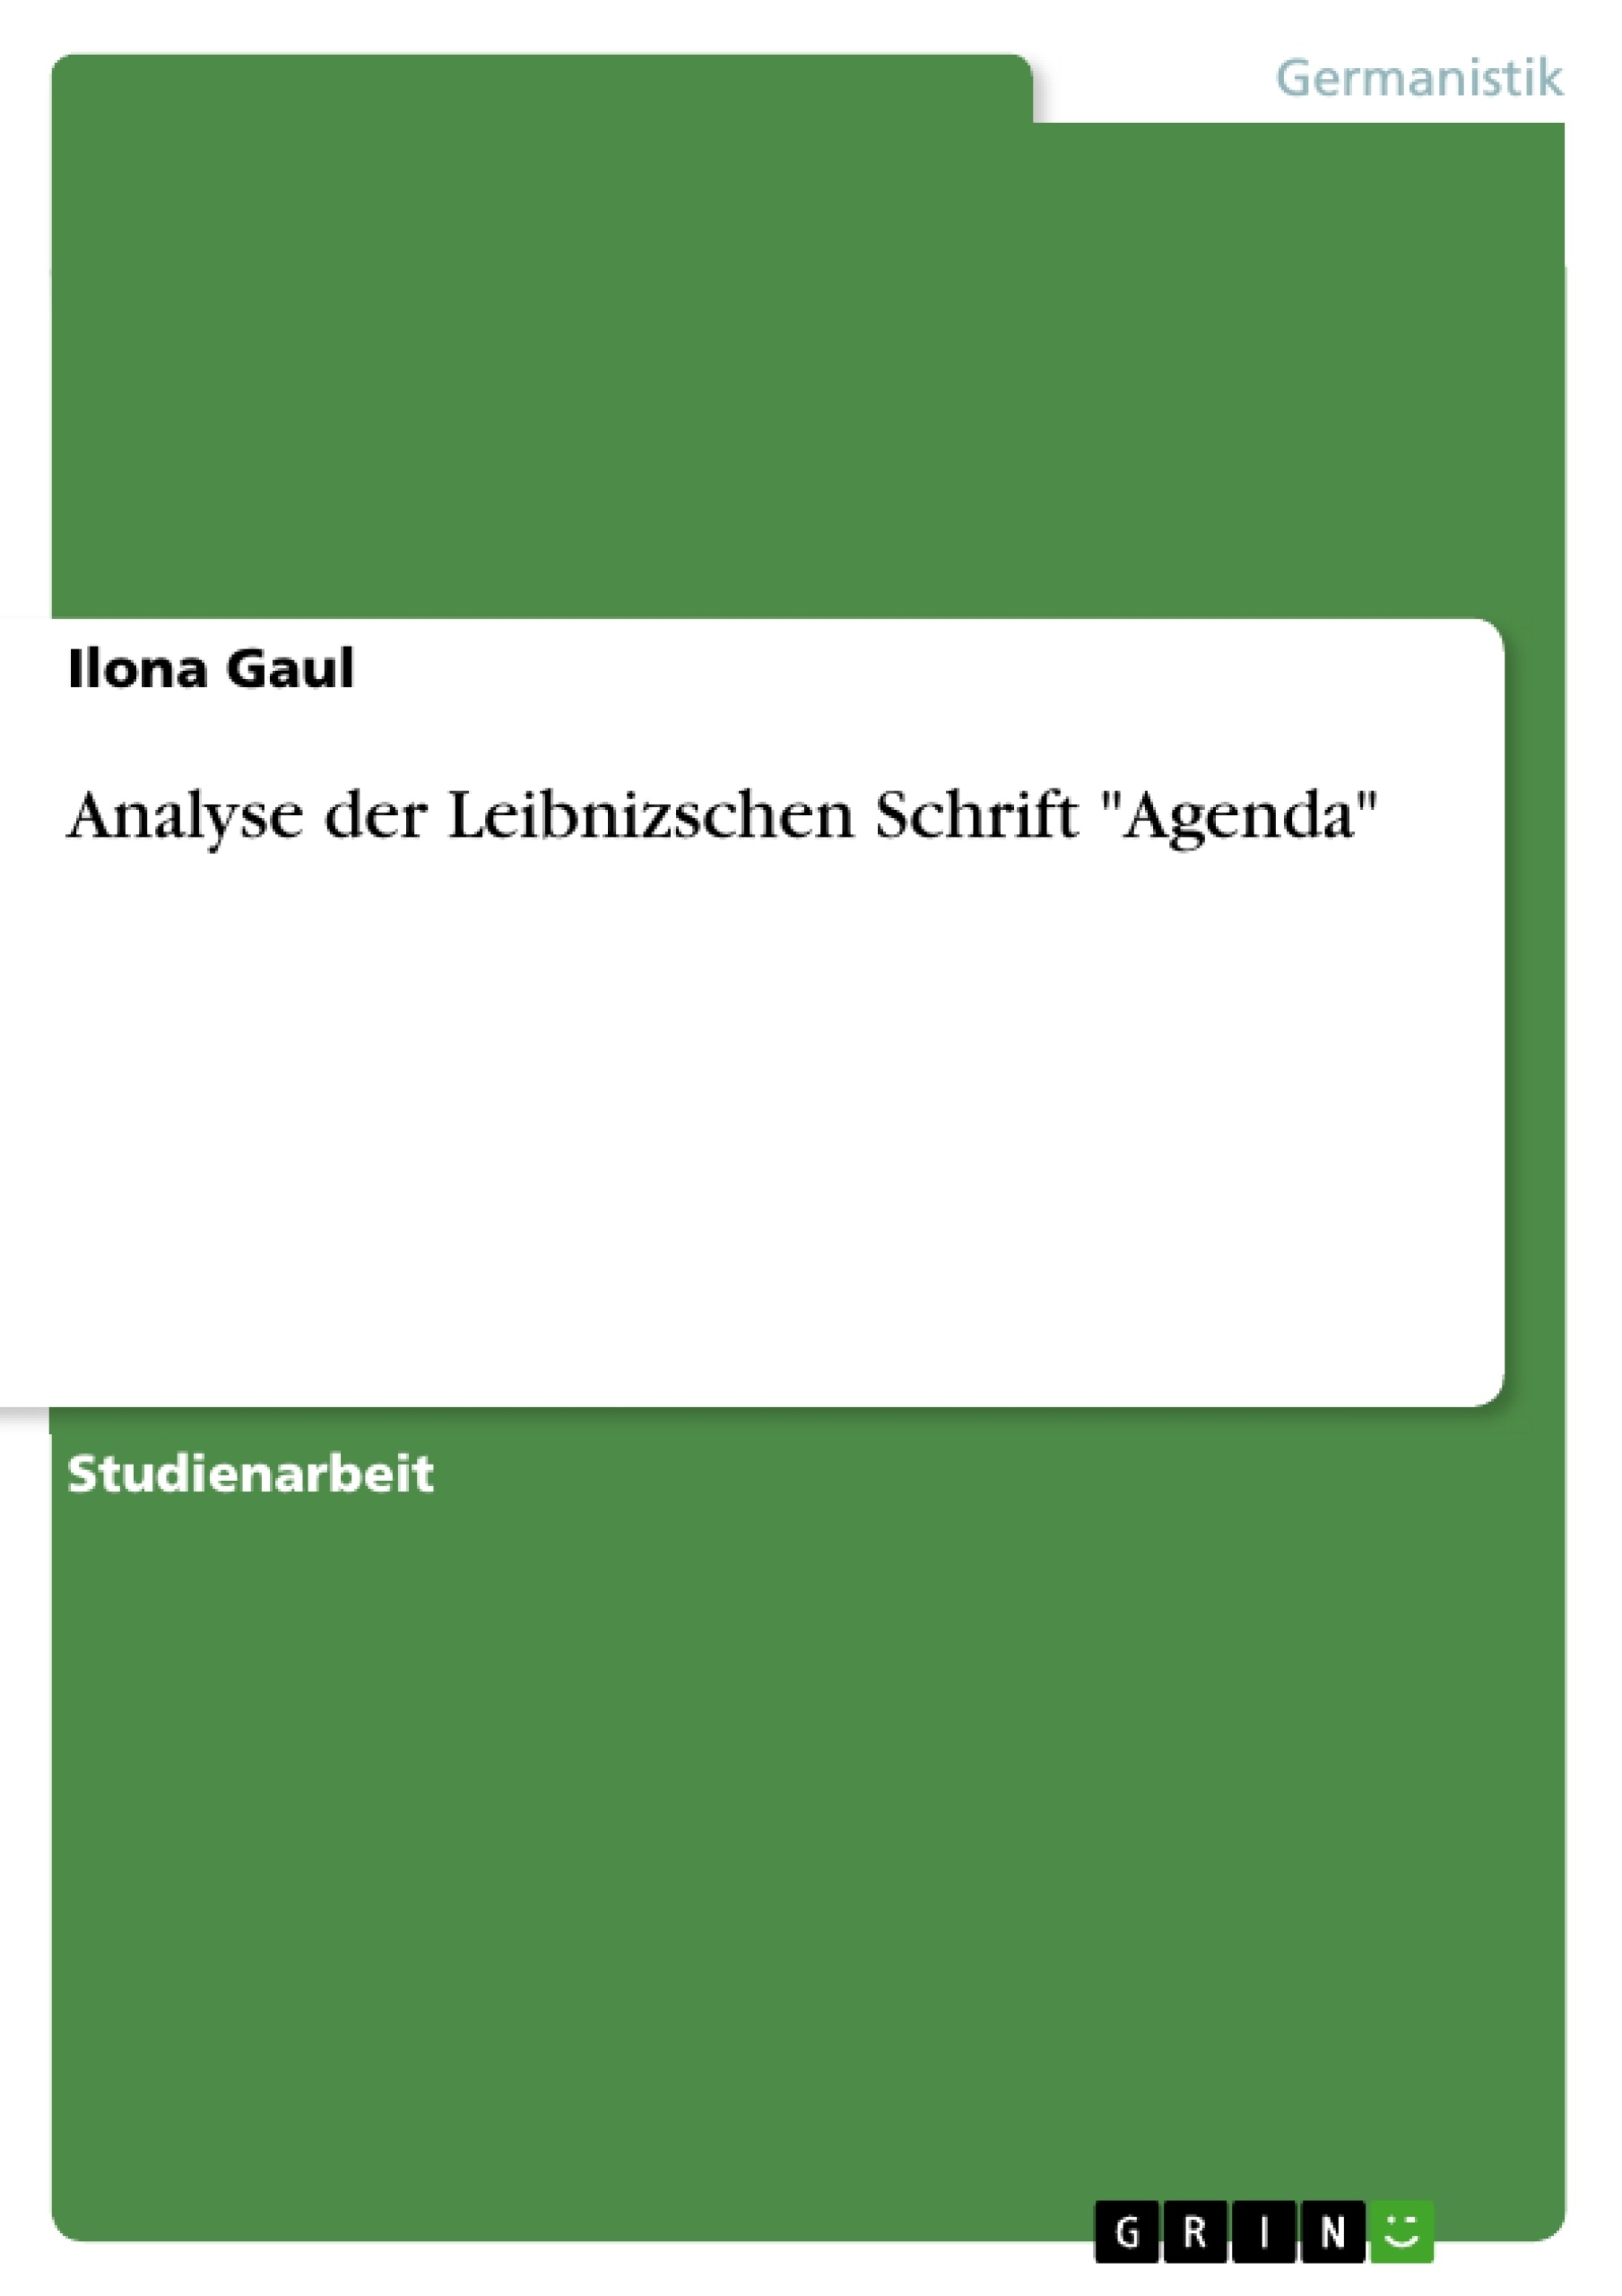 Título: Analyse der Leibnizschen Schrift "Agenda"